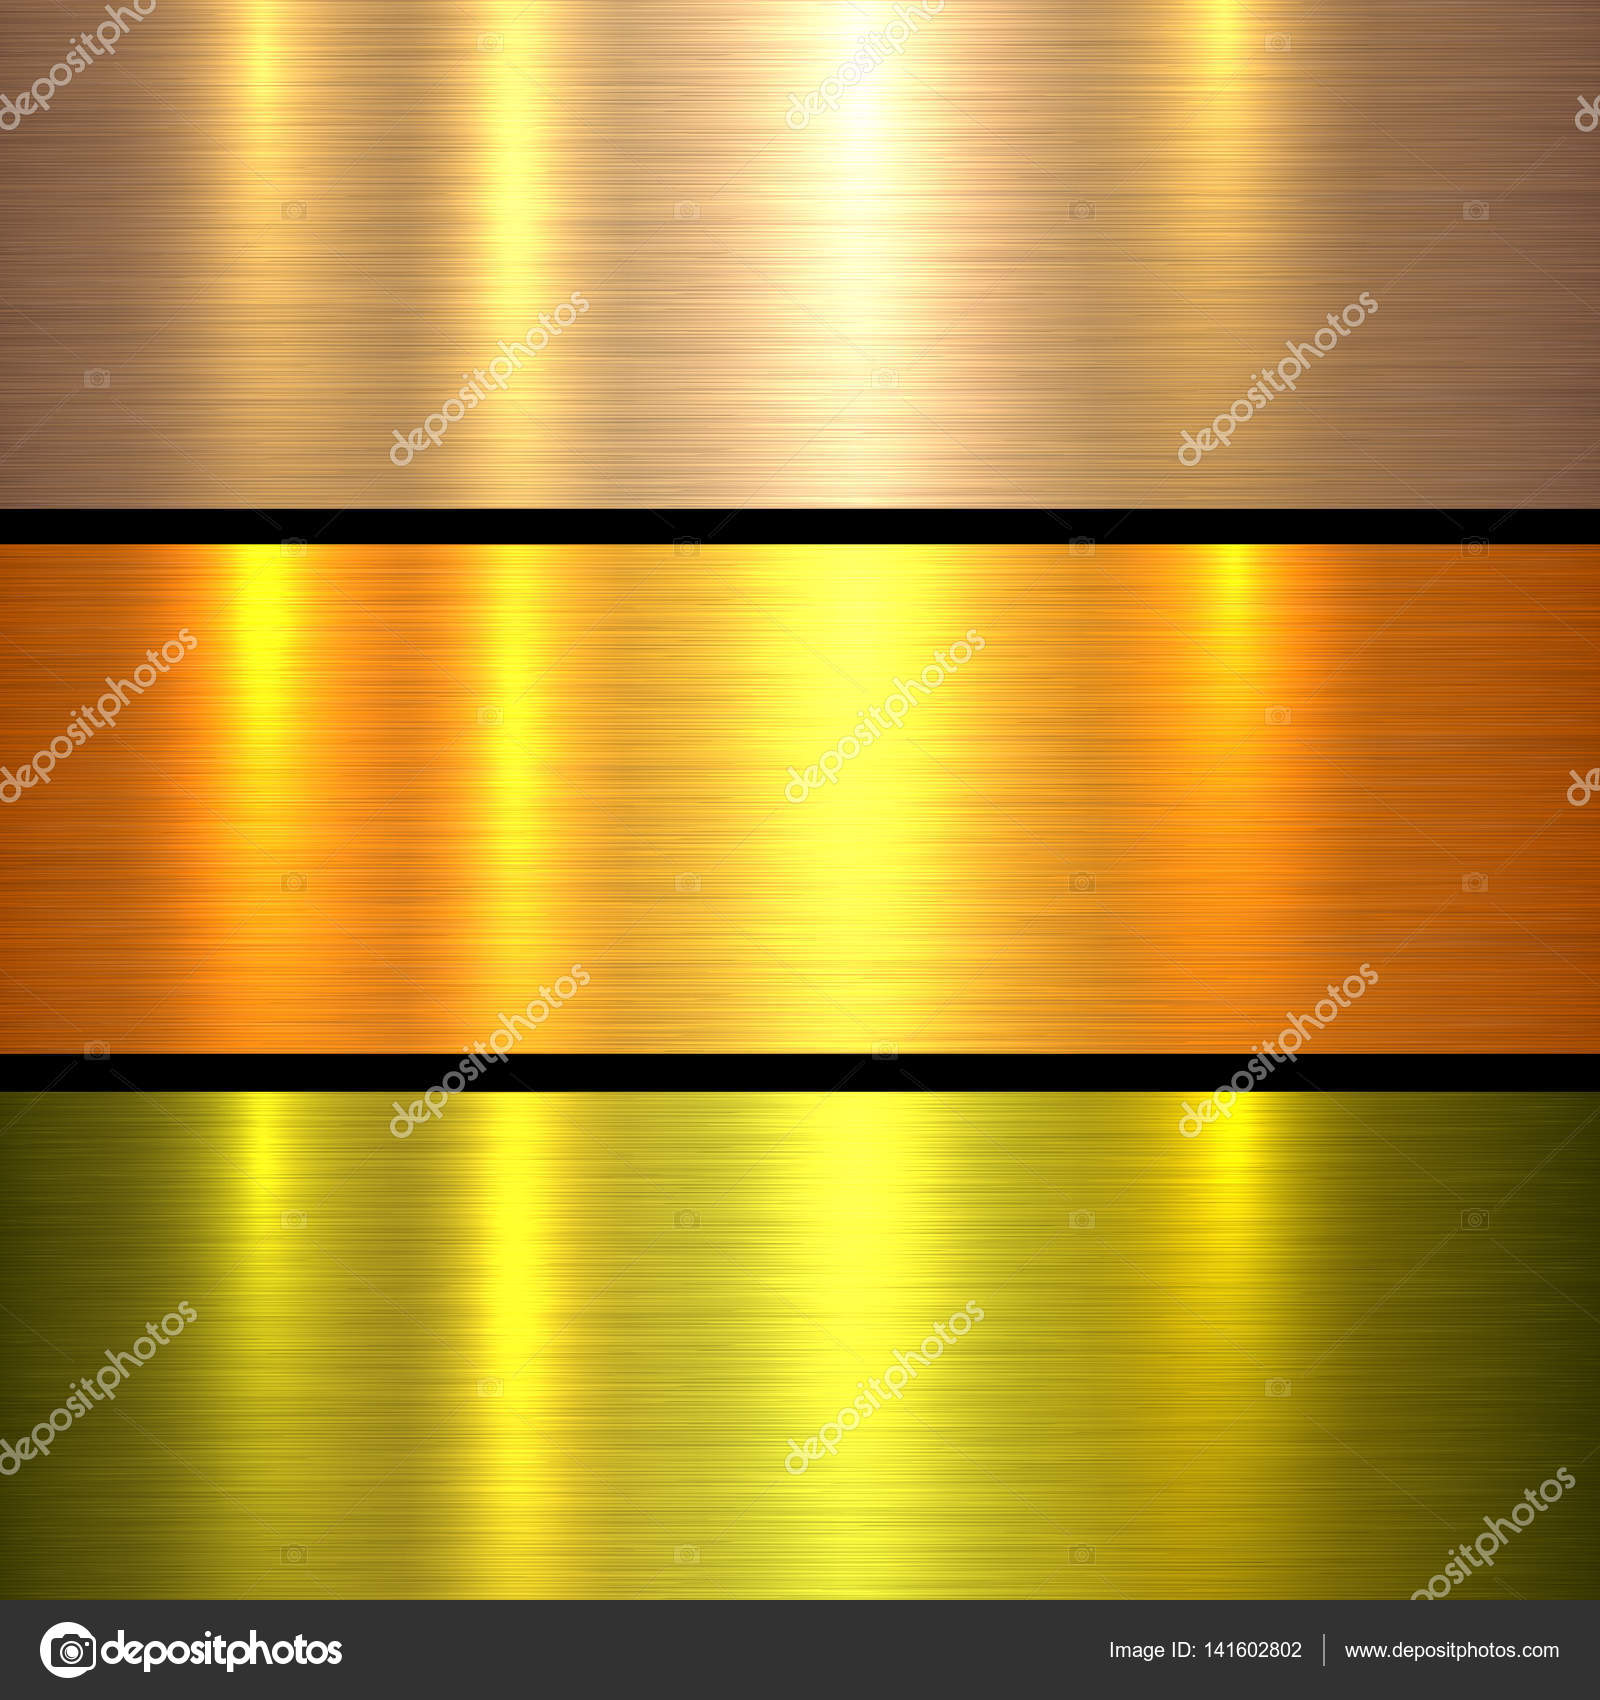 Hình nền kim loại vàng: Sự kết hợp hoàn hảo giữa hình ảnh kim loại và màu sắc vàng làm cho hình nền kim loại vàng trở nên vô cùng ấn tượng và độc đáo. Chiếc máy tính của bạn sẽ thật sự nổi bật với điểm nhấn đầy ấn tượng này.